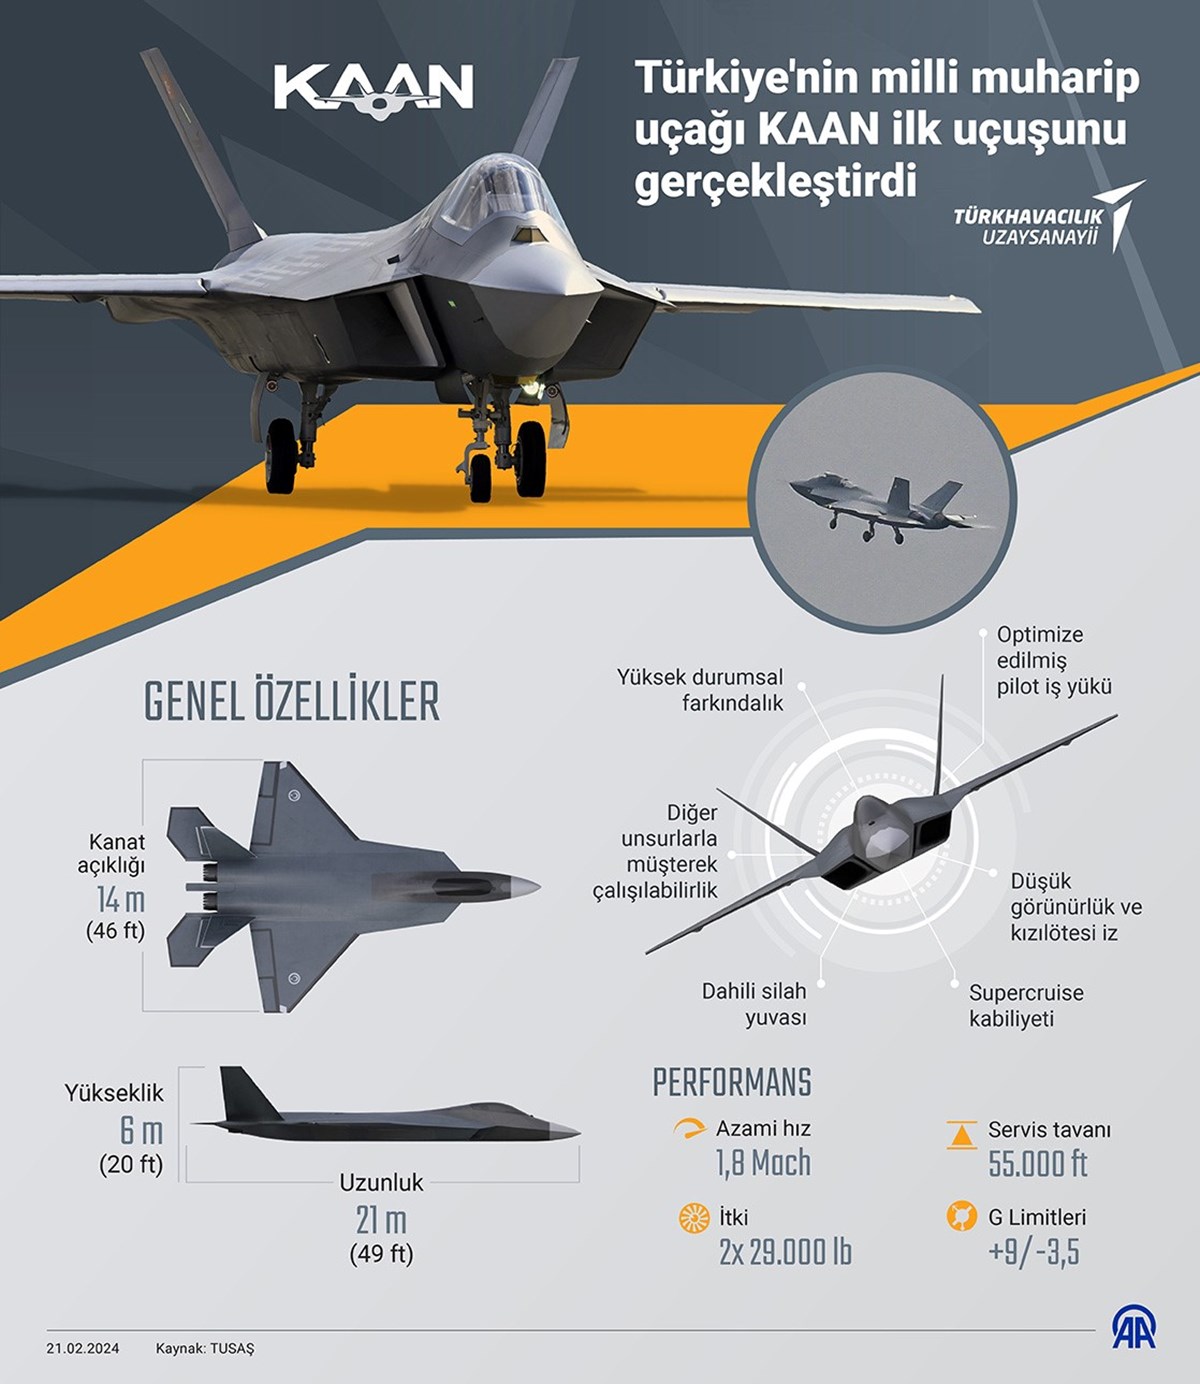 Cumhurbaşkanı Erdoğan: KAAN aynı F-16 gibi, daha neler gelecek neler